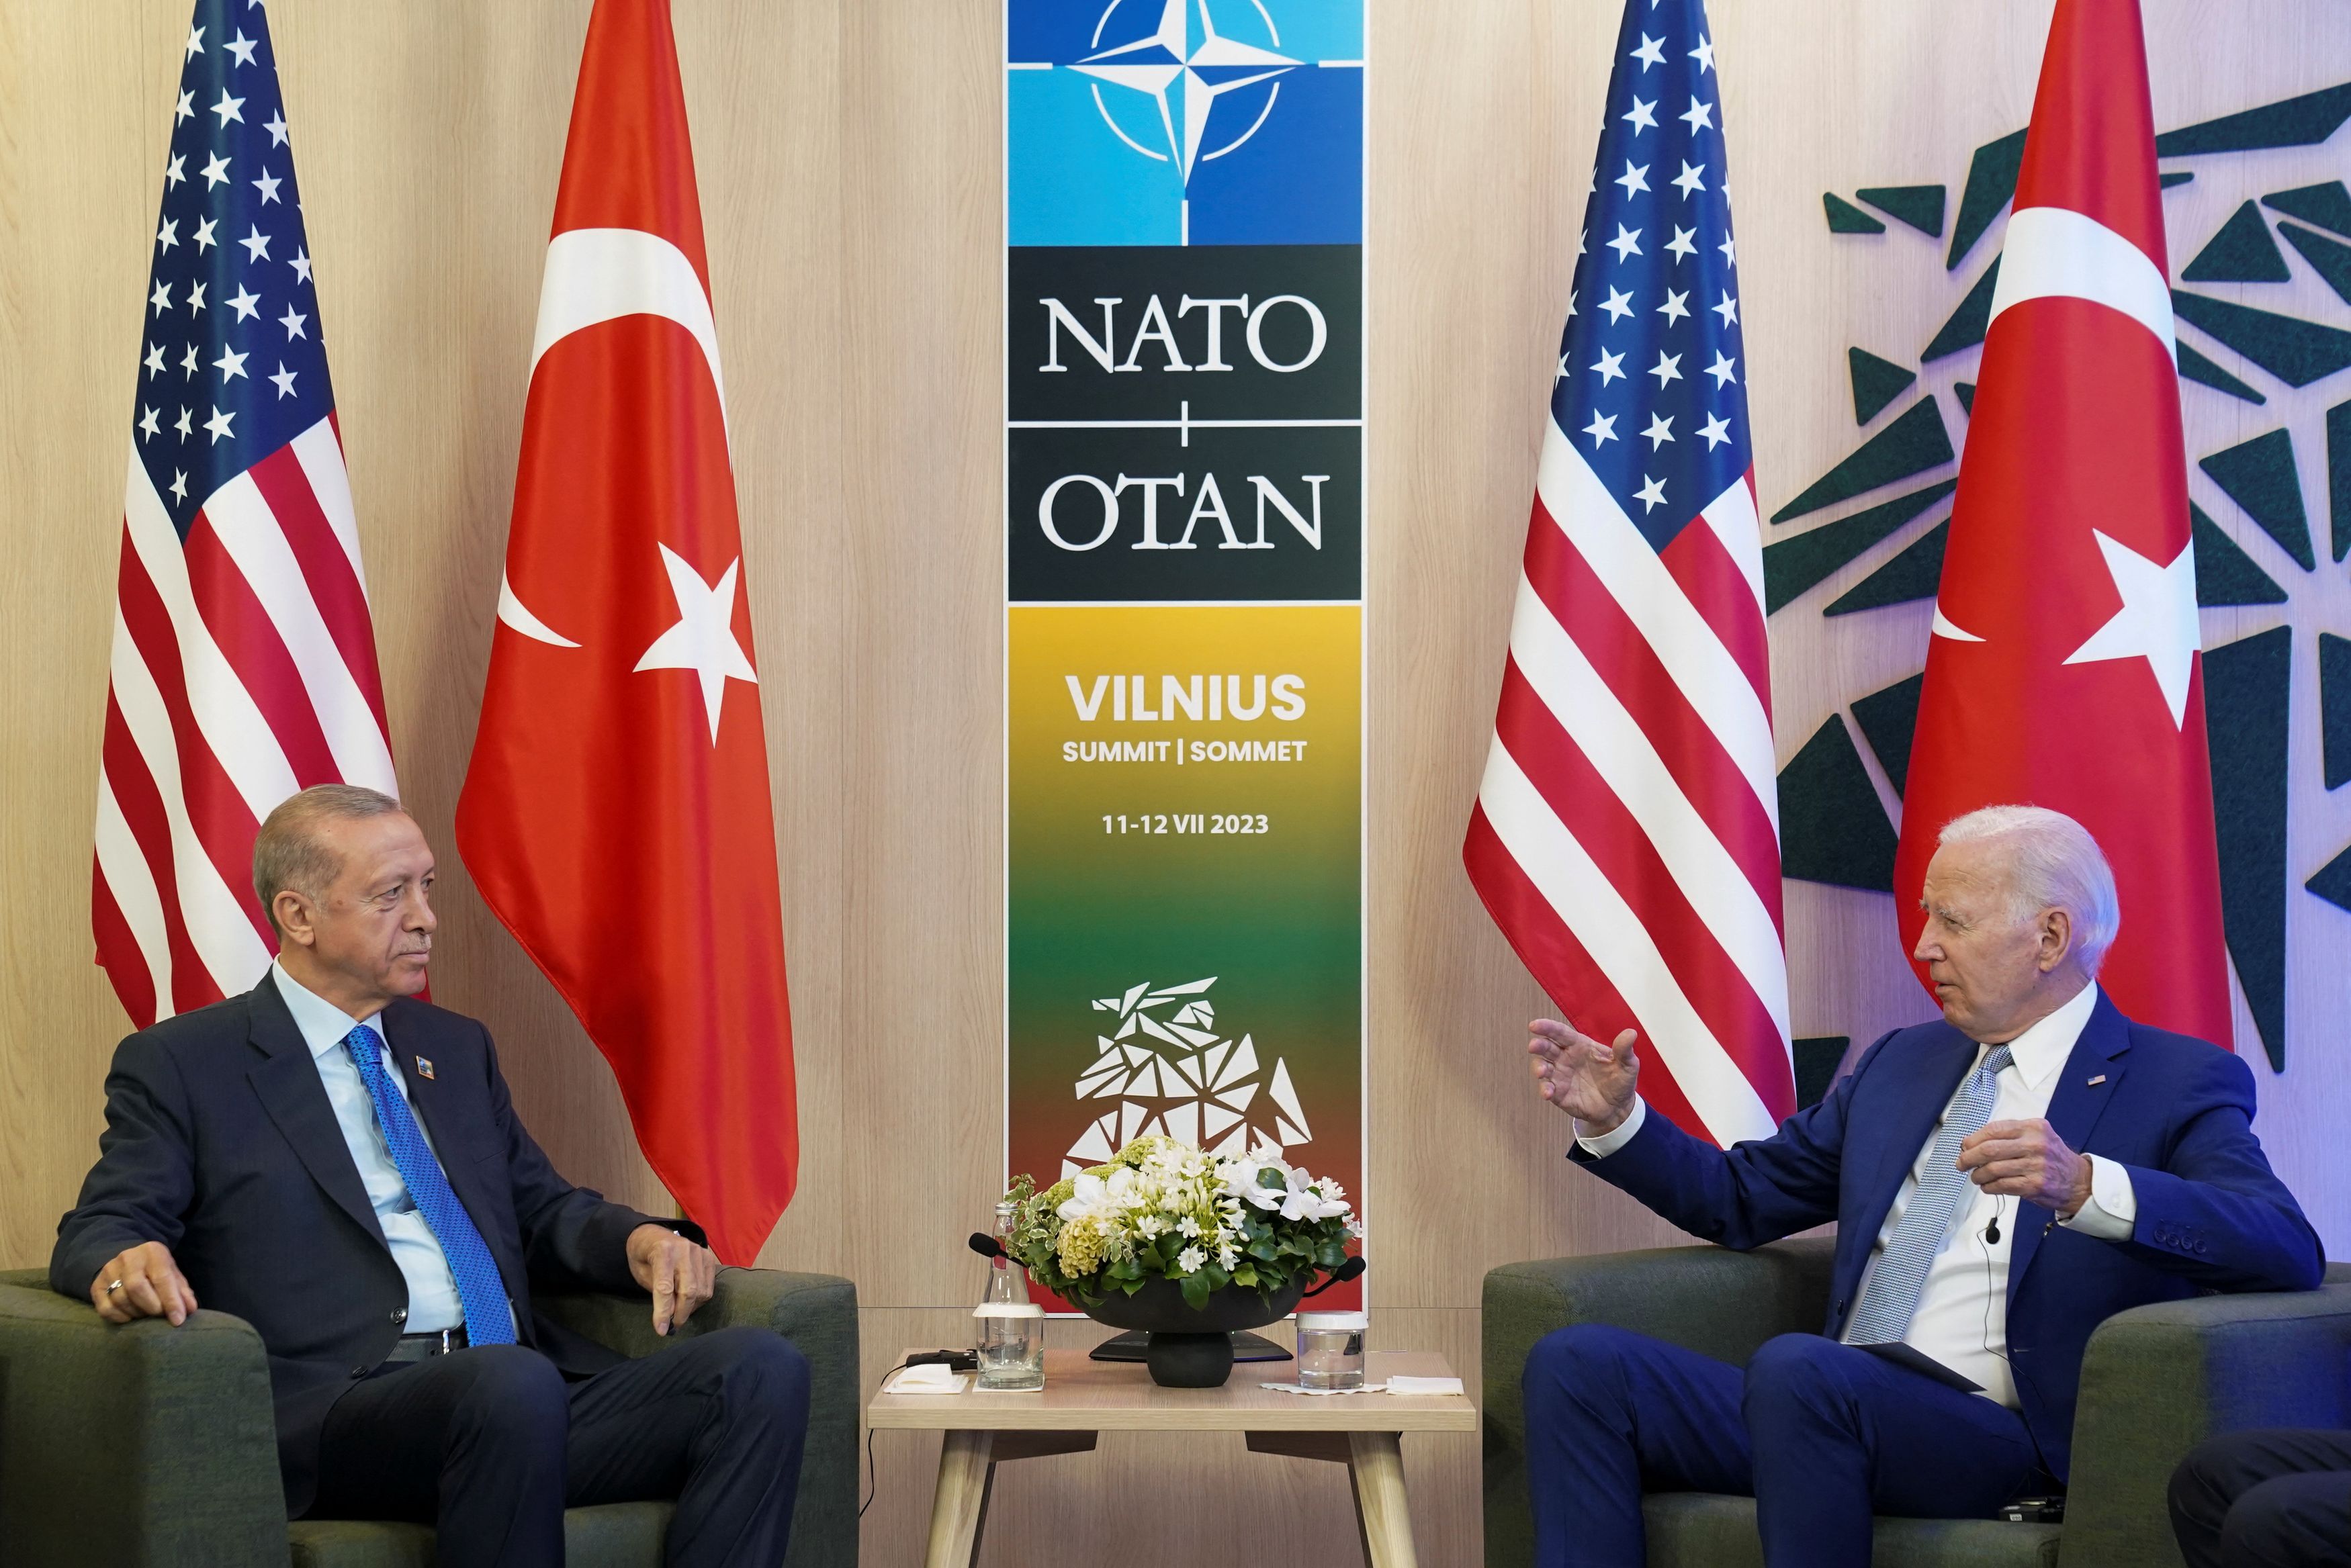 Βίλνιους: «Πρώτο βήμα στη σωστή κατεύθυνση» η συνάντηση Ερντογάν - Μπάιντεν στη Σύνοδο του ΝΑΤΟ